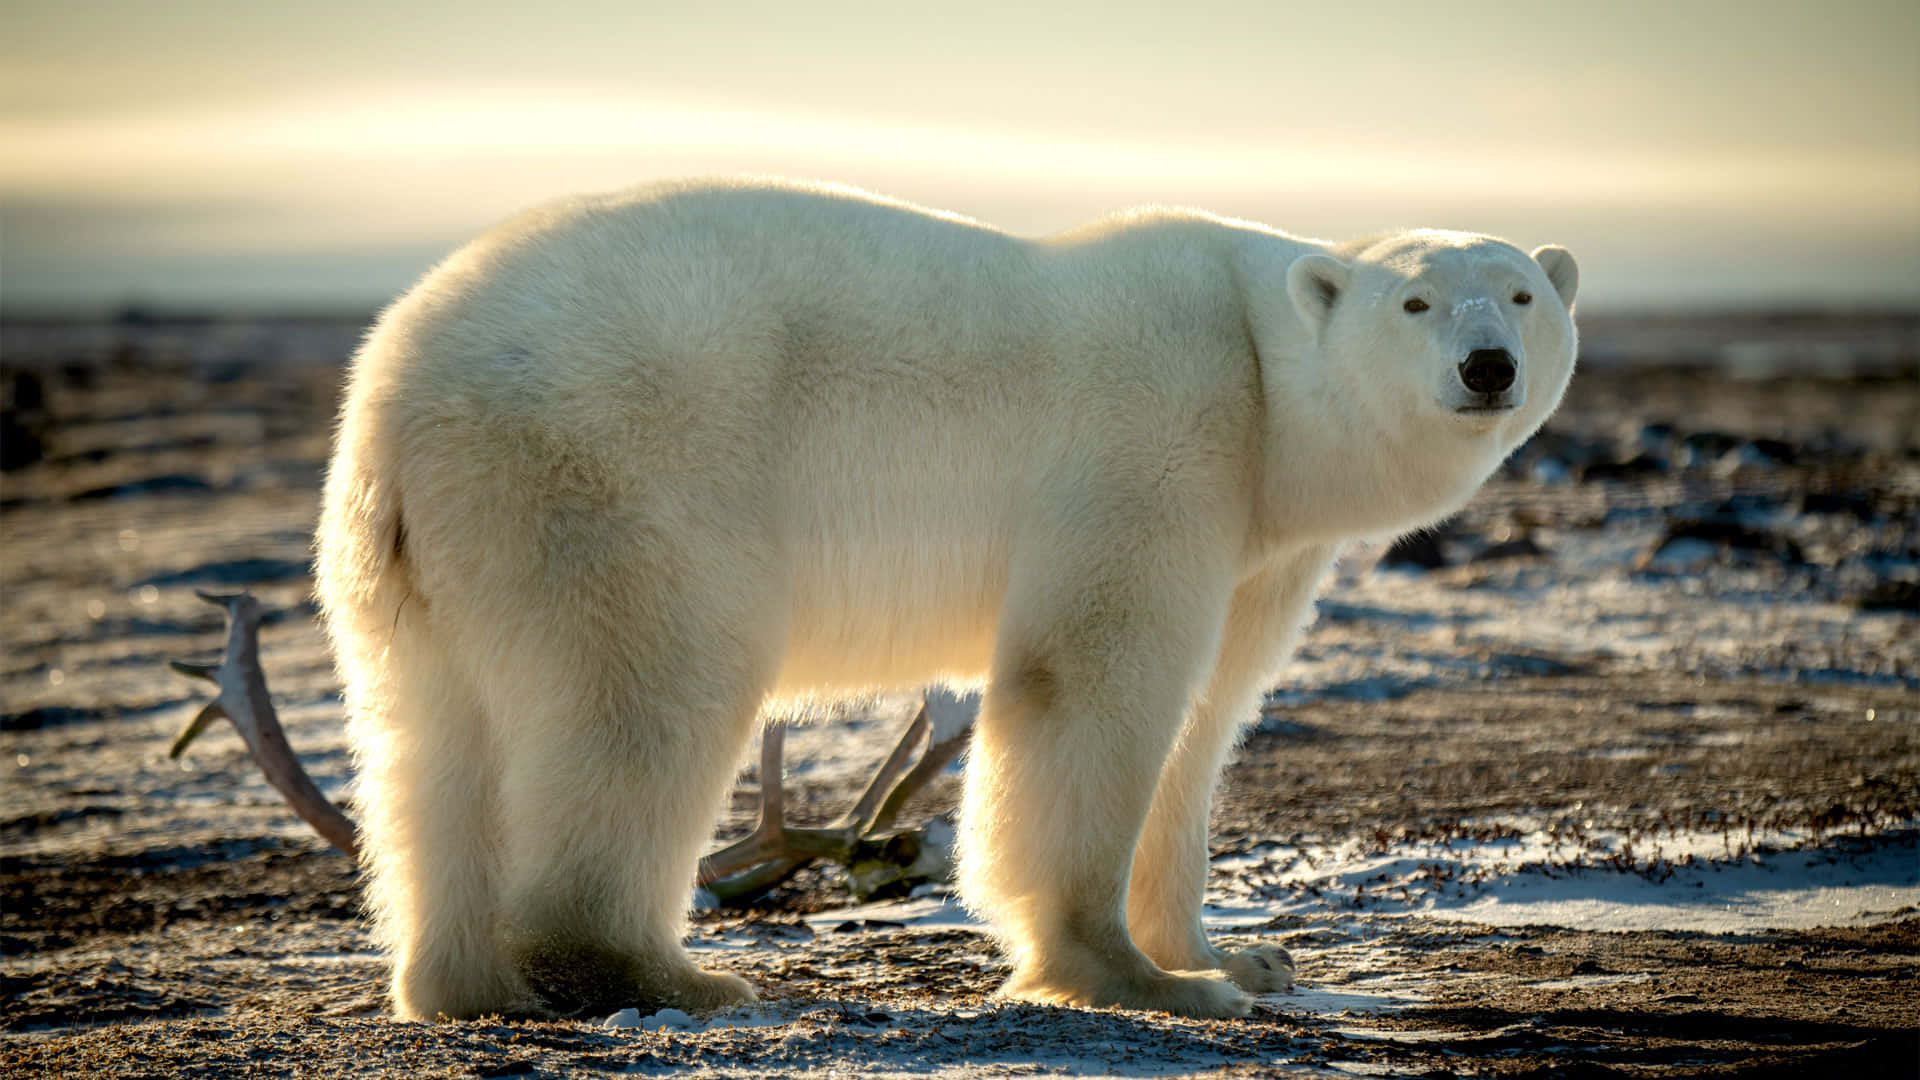 A powerful Polar Bear poised for action